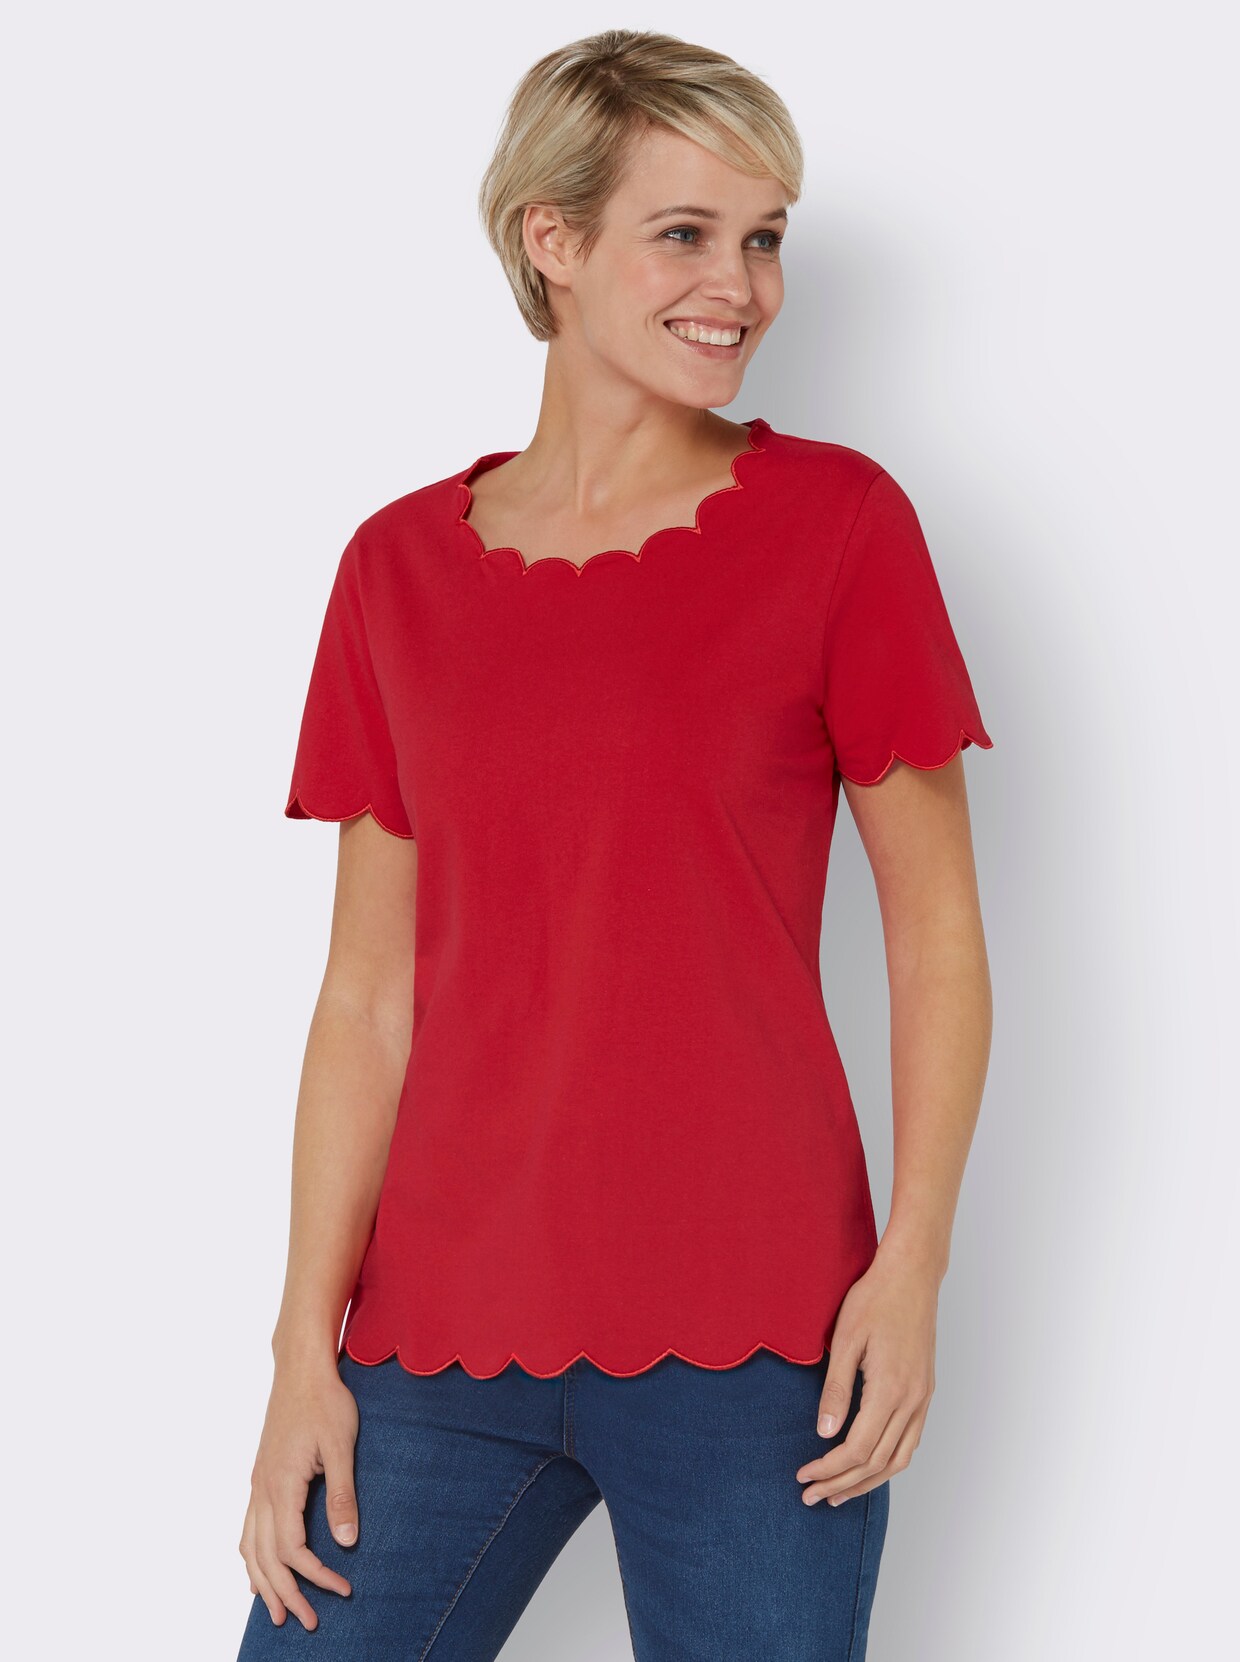 Tričko s krátkým rukávem - červená